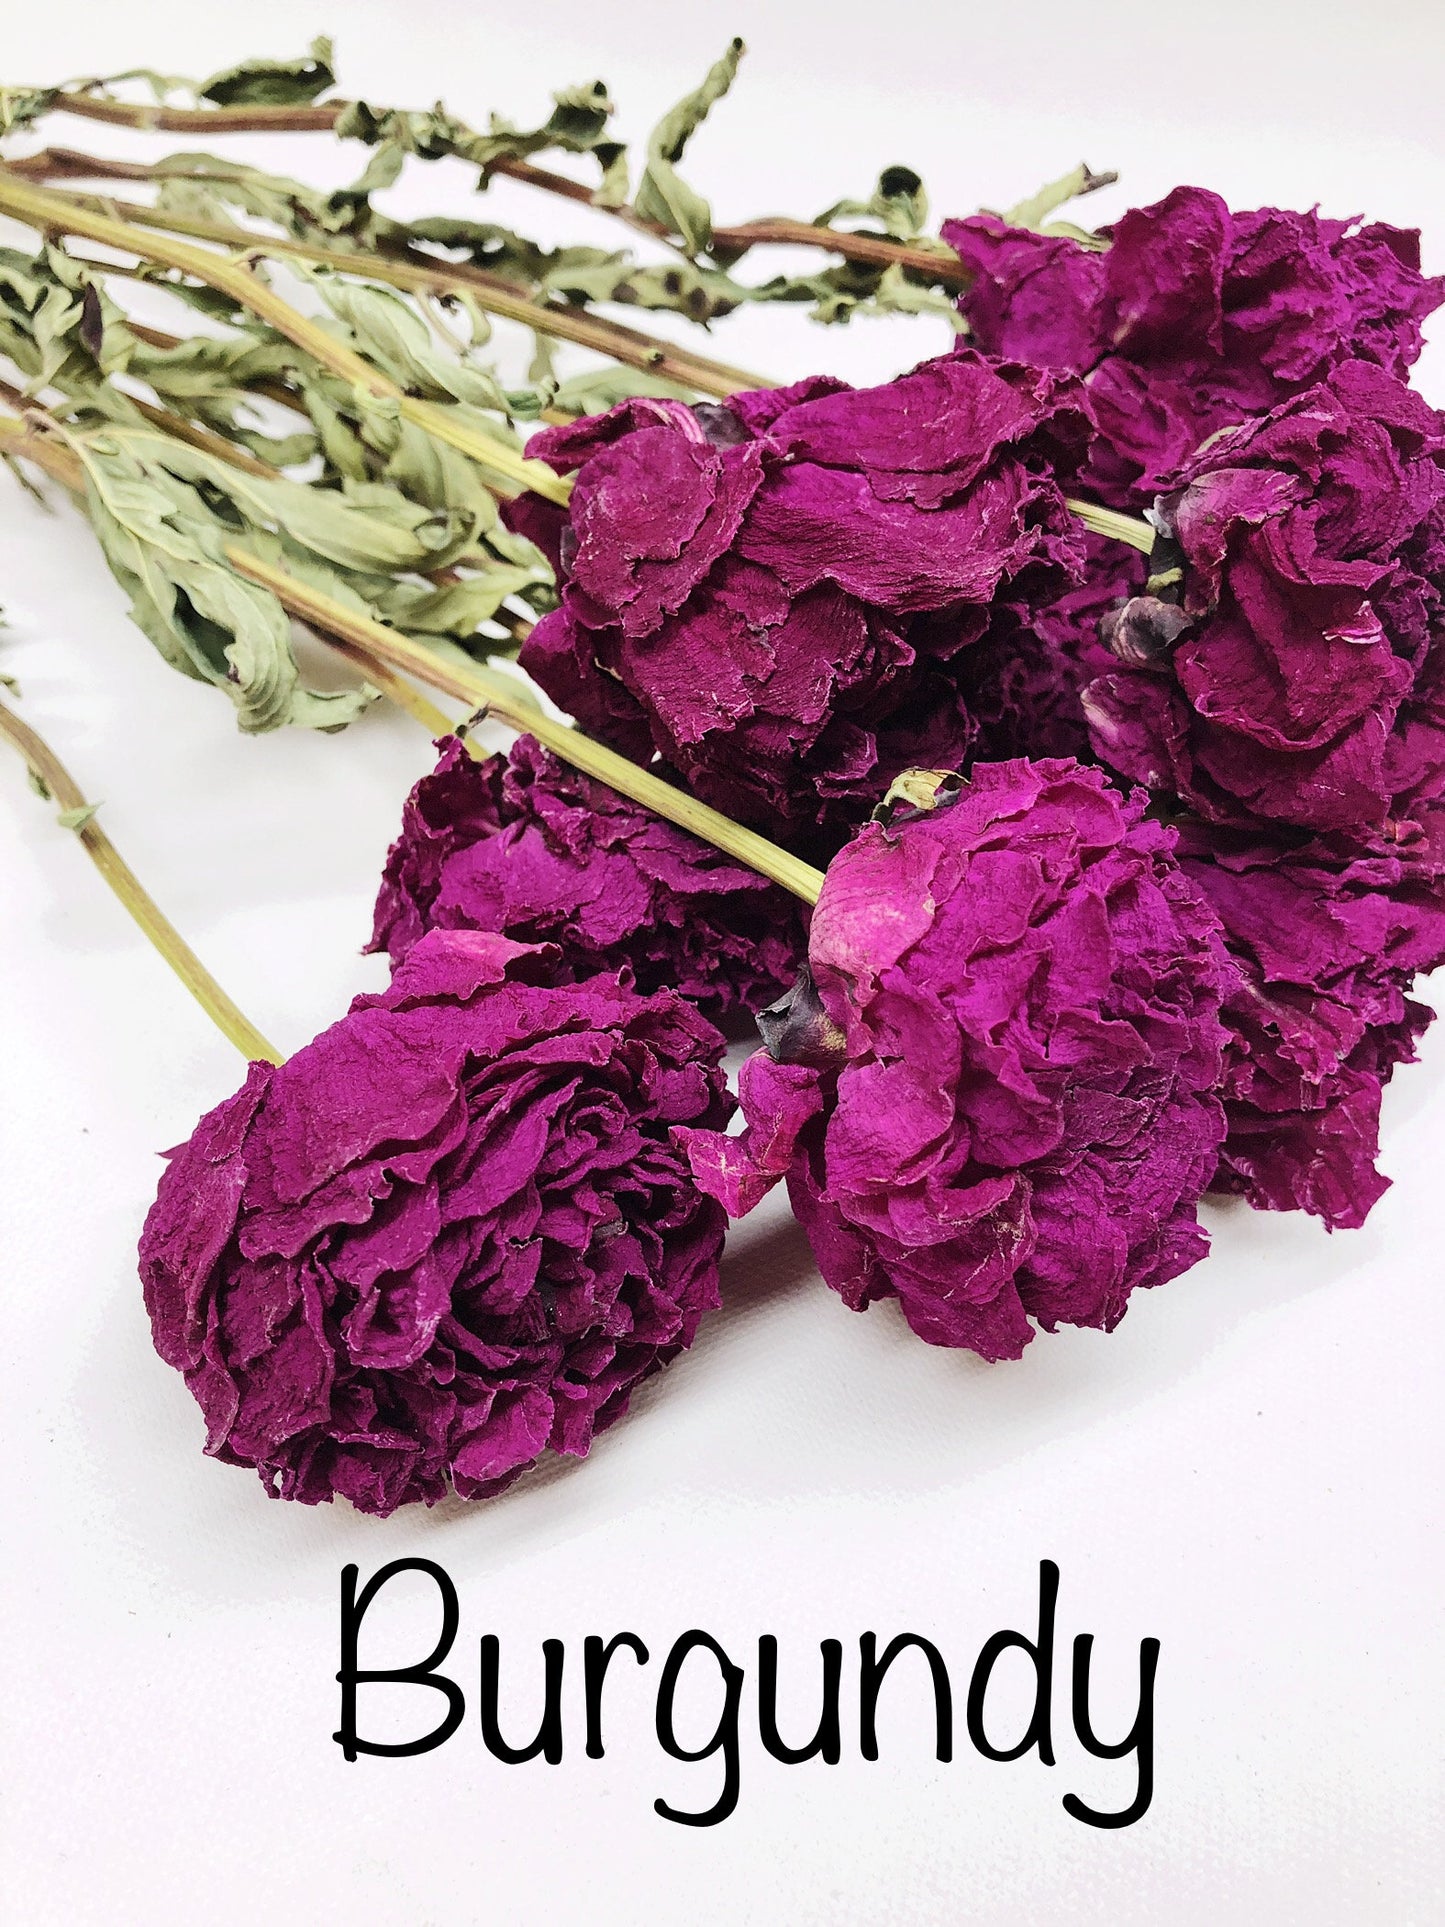 Peony Blooms, Peonies, Flowers, Dried Flowers, Light, Medium, Dark Pink, Burgundy, Cream, Beige, Nude, Wedding bouquets, Bridal flowers